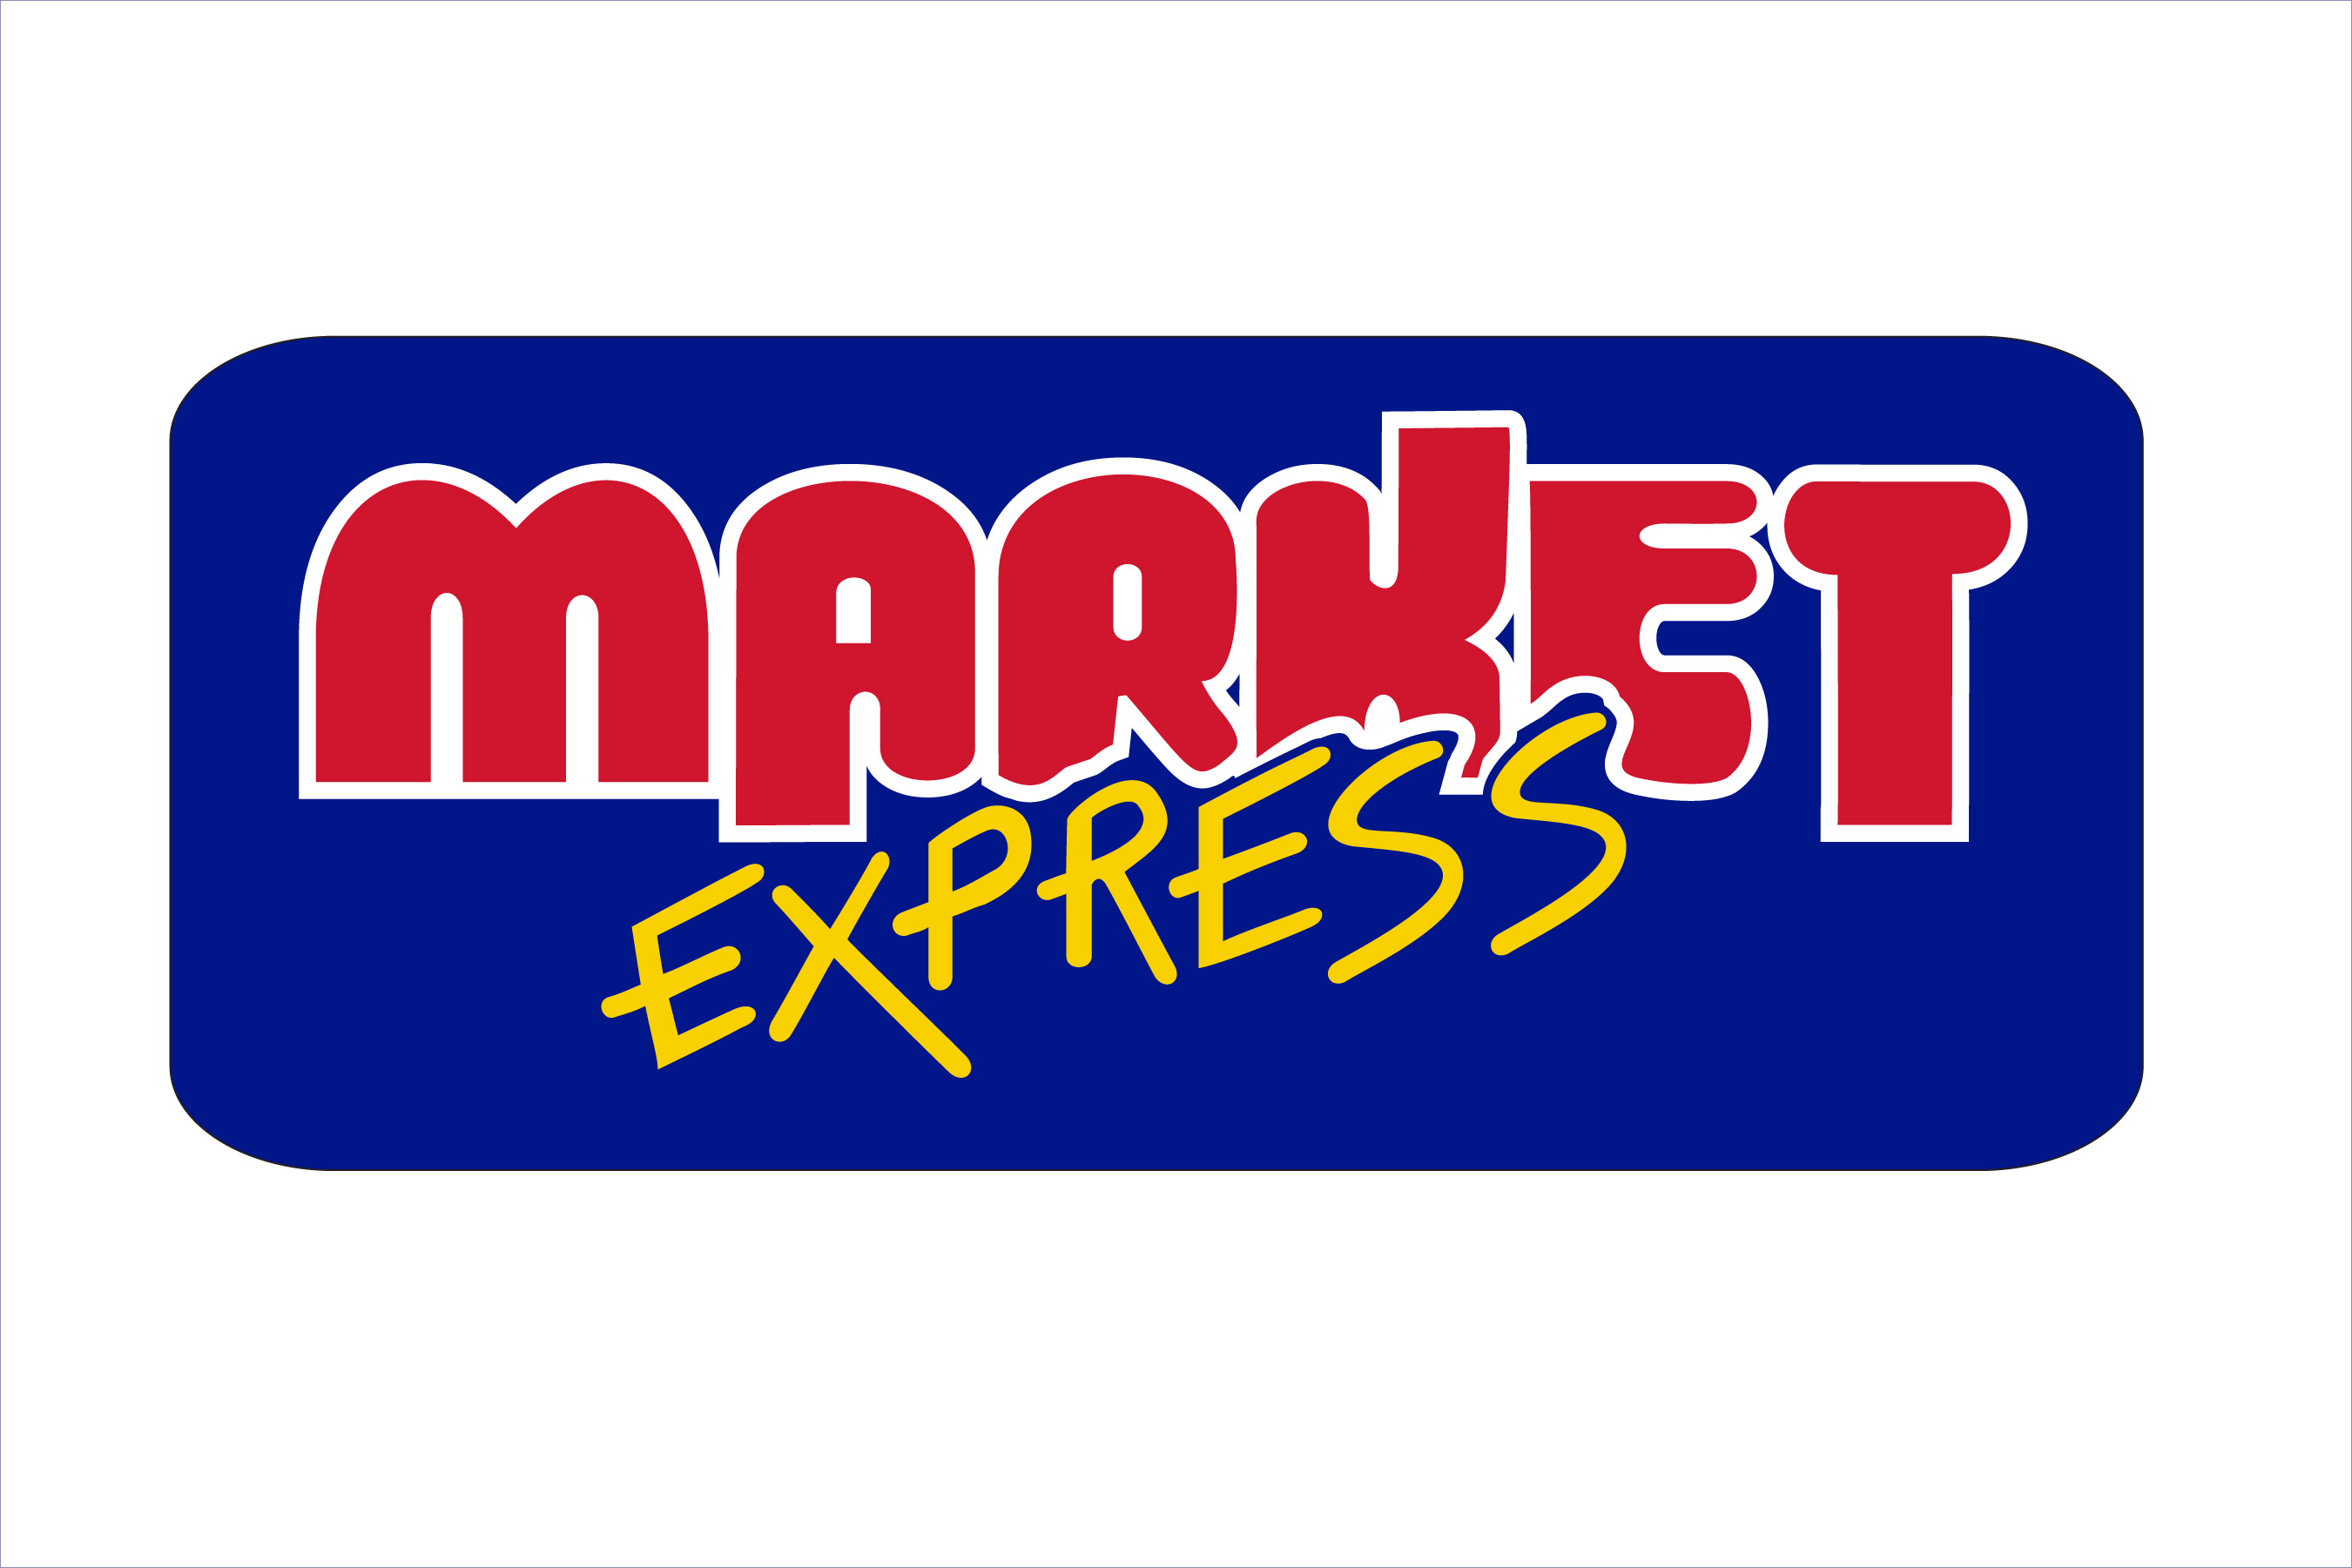 MARKET EXPRESS - CAR WASH CARD